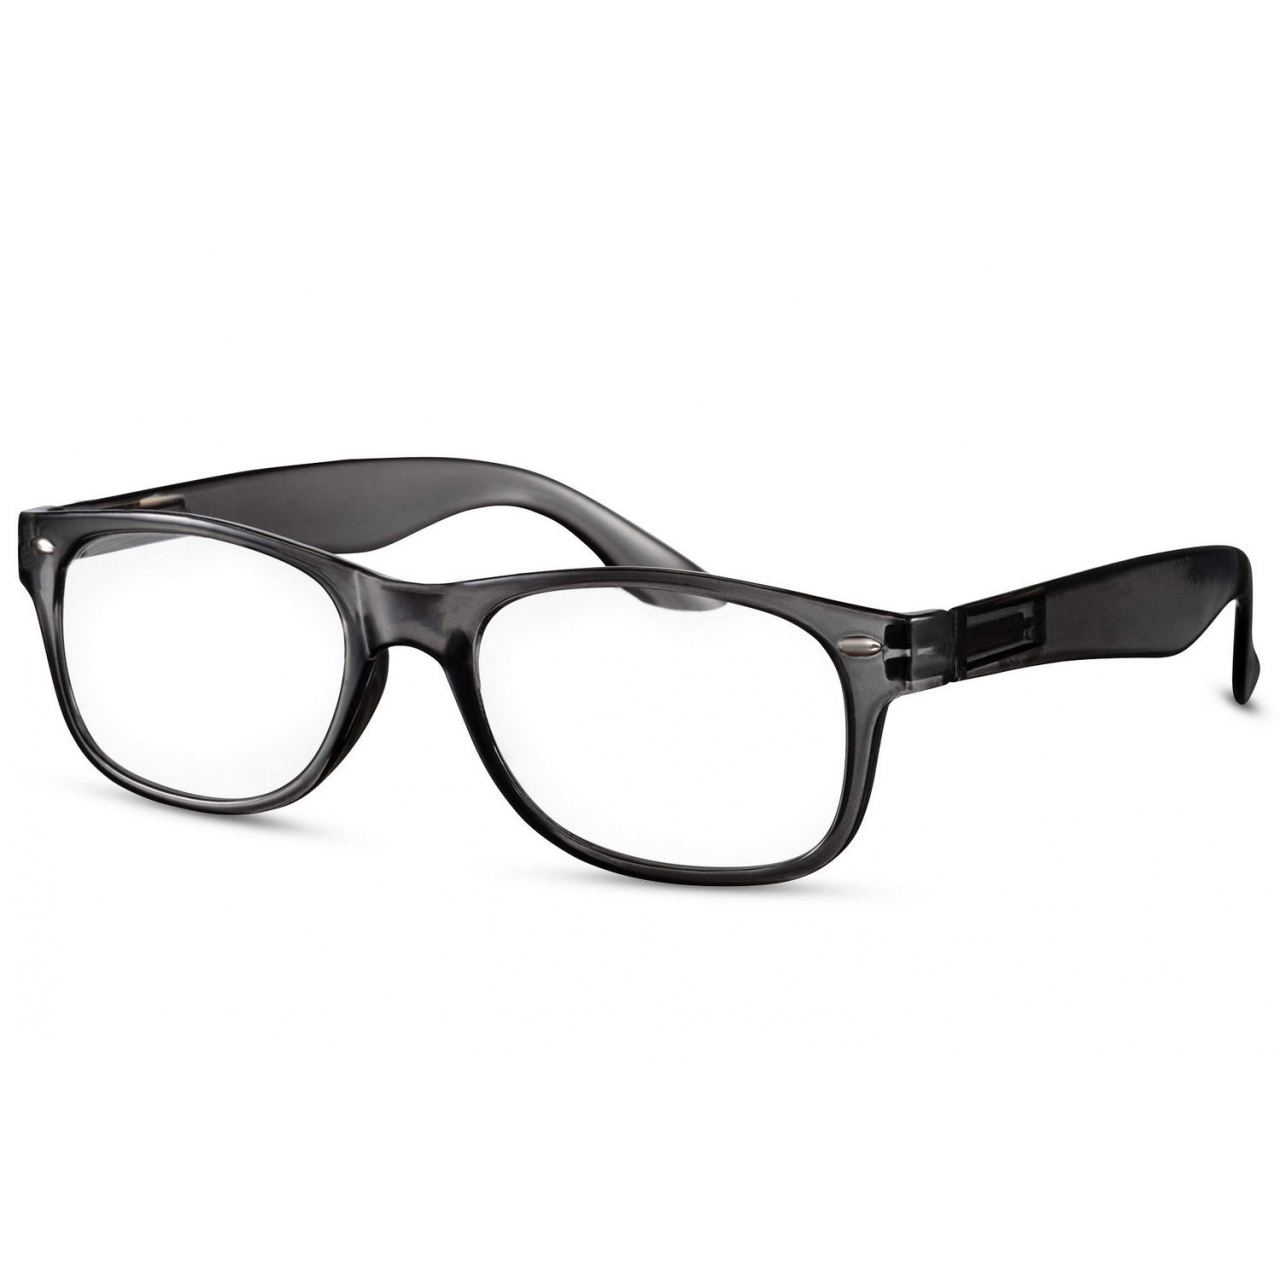 Dioptrické brýle Solo Trans - černé